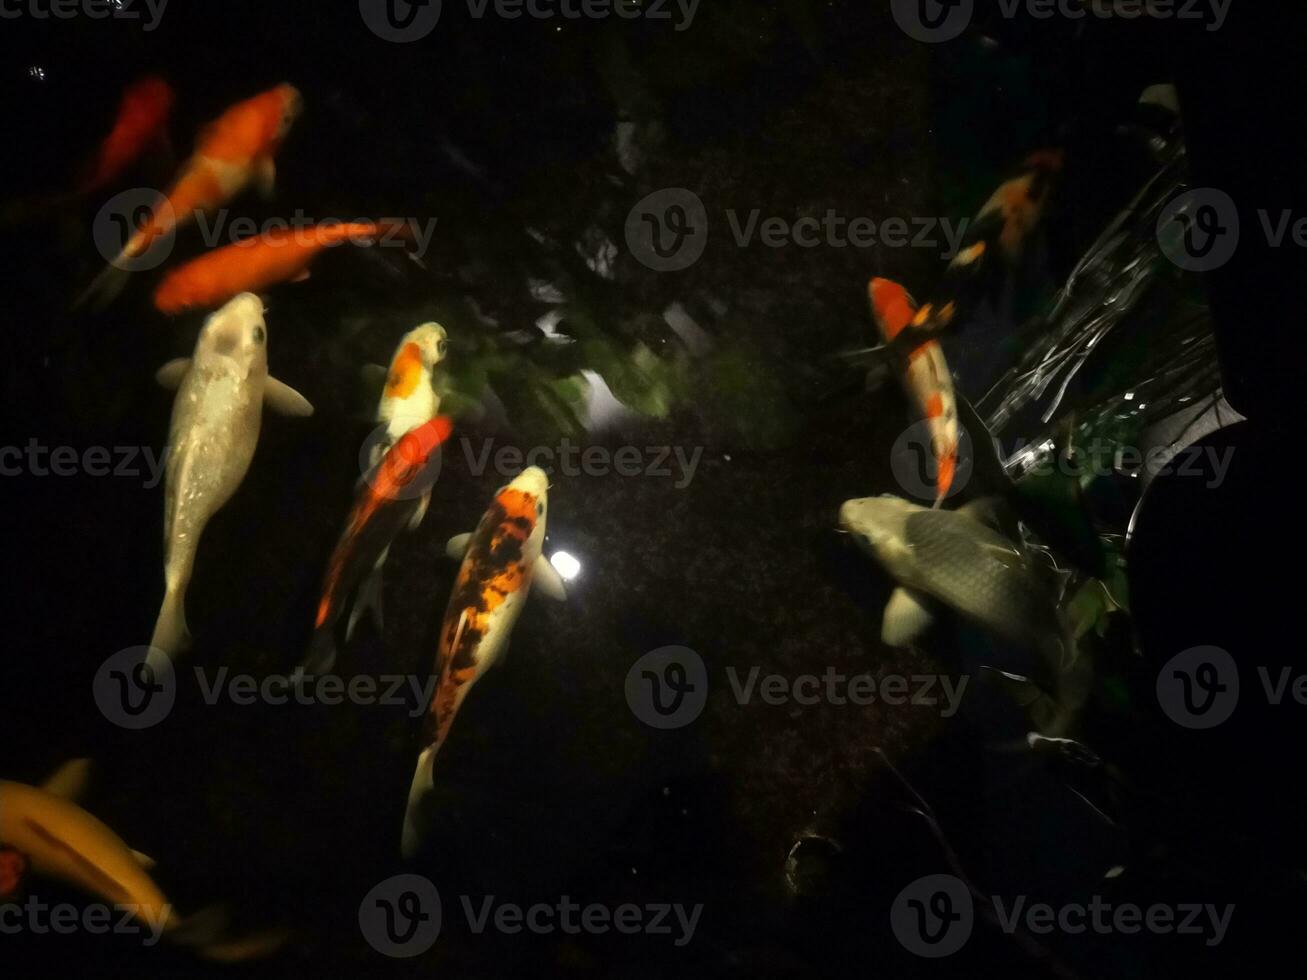 koi poisson une débutant guider à choisir, nourrir et maintenir votre coloré étang animaux domestiques photo